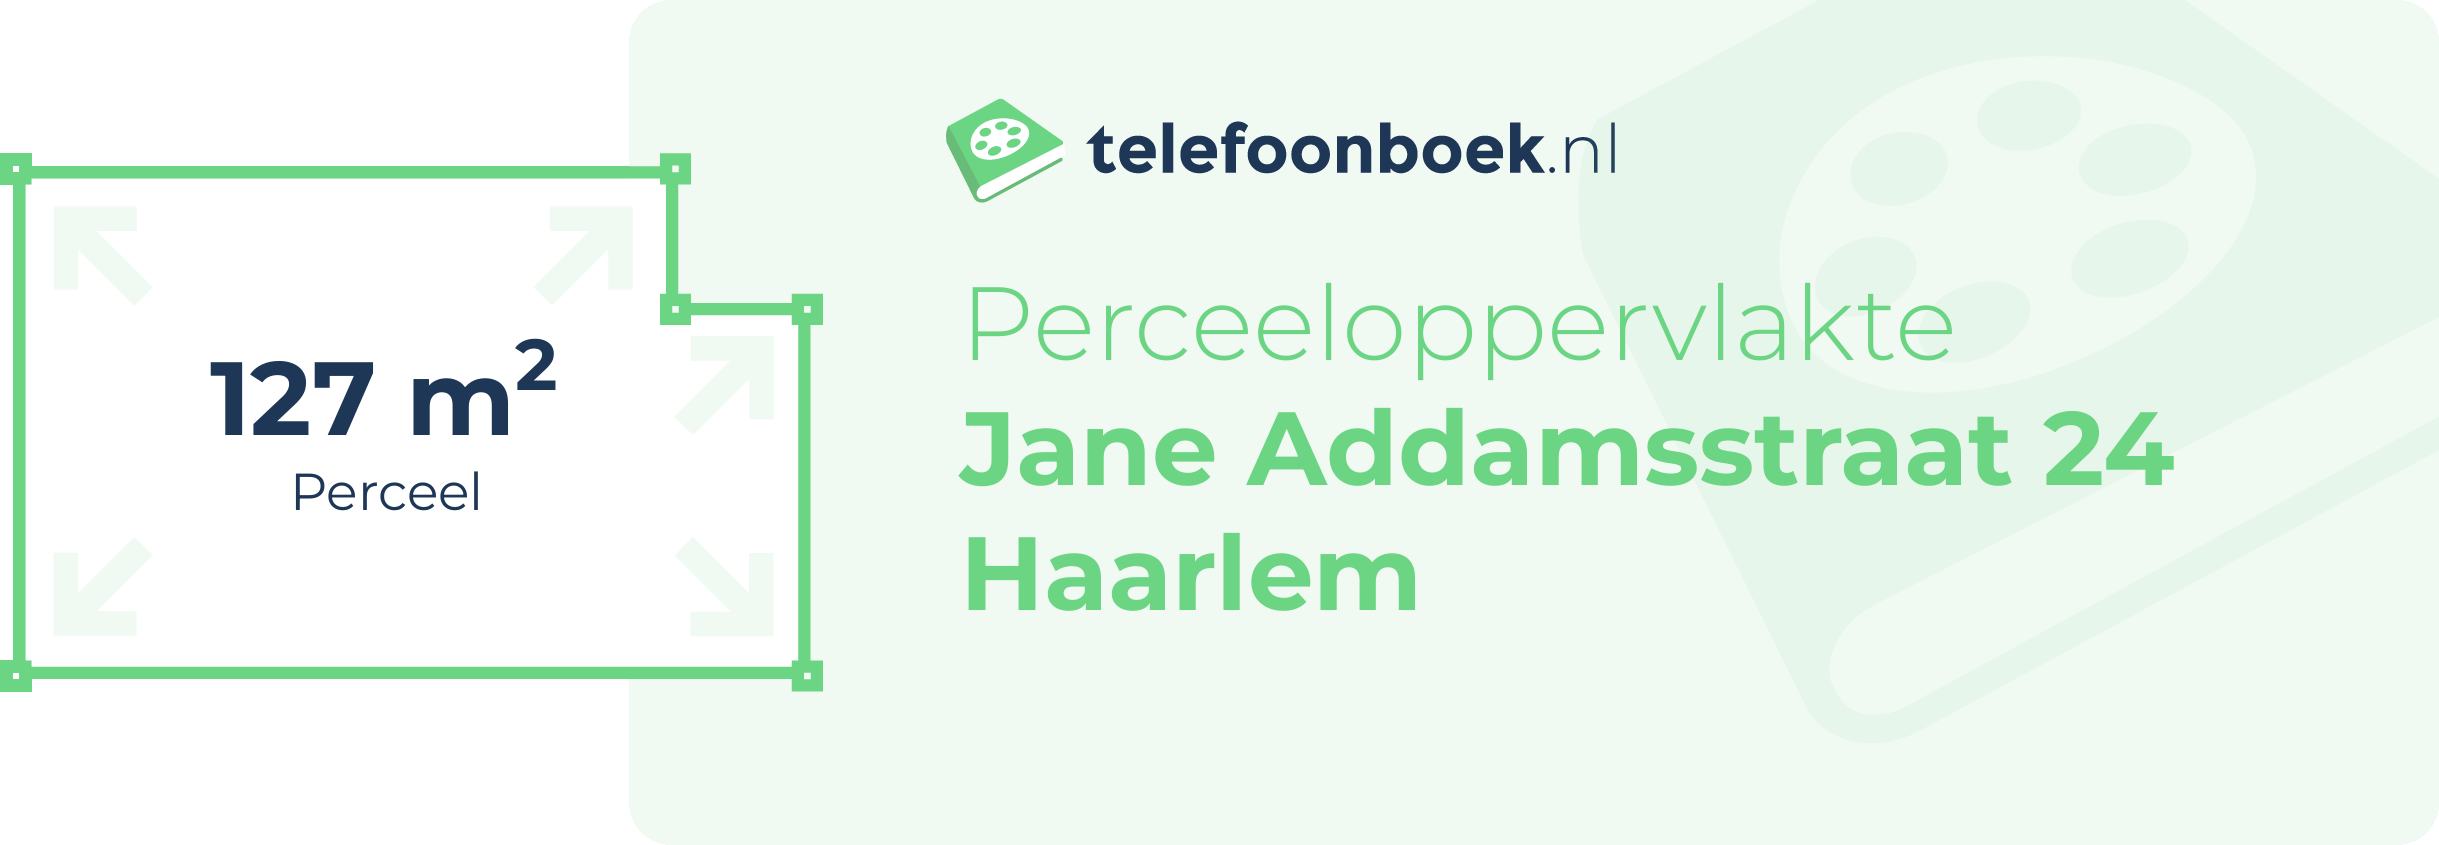 Perceeloppervlakte Jane Addamsstraat 24 Haarlem